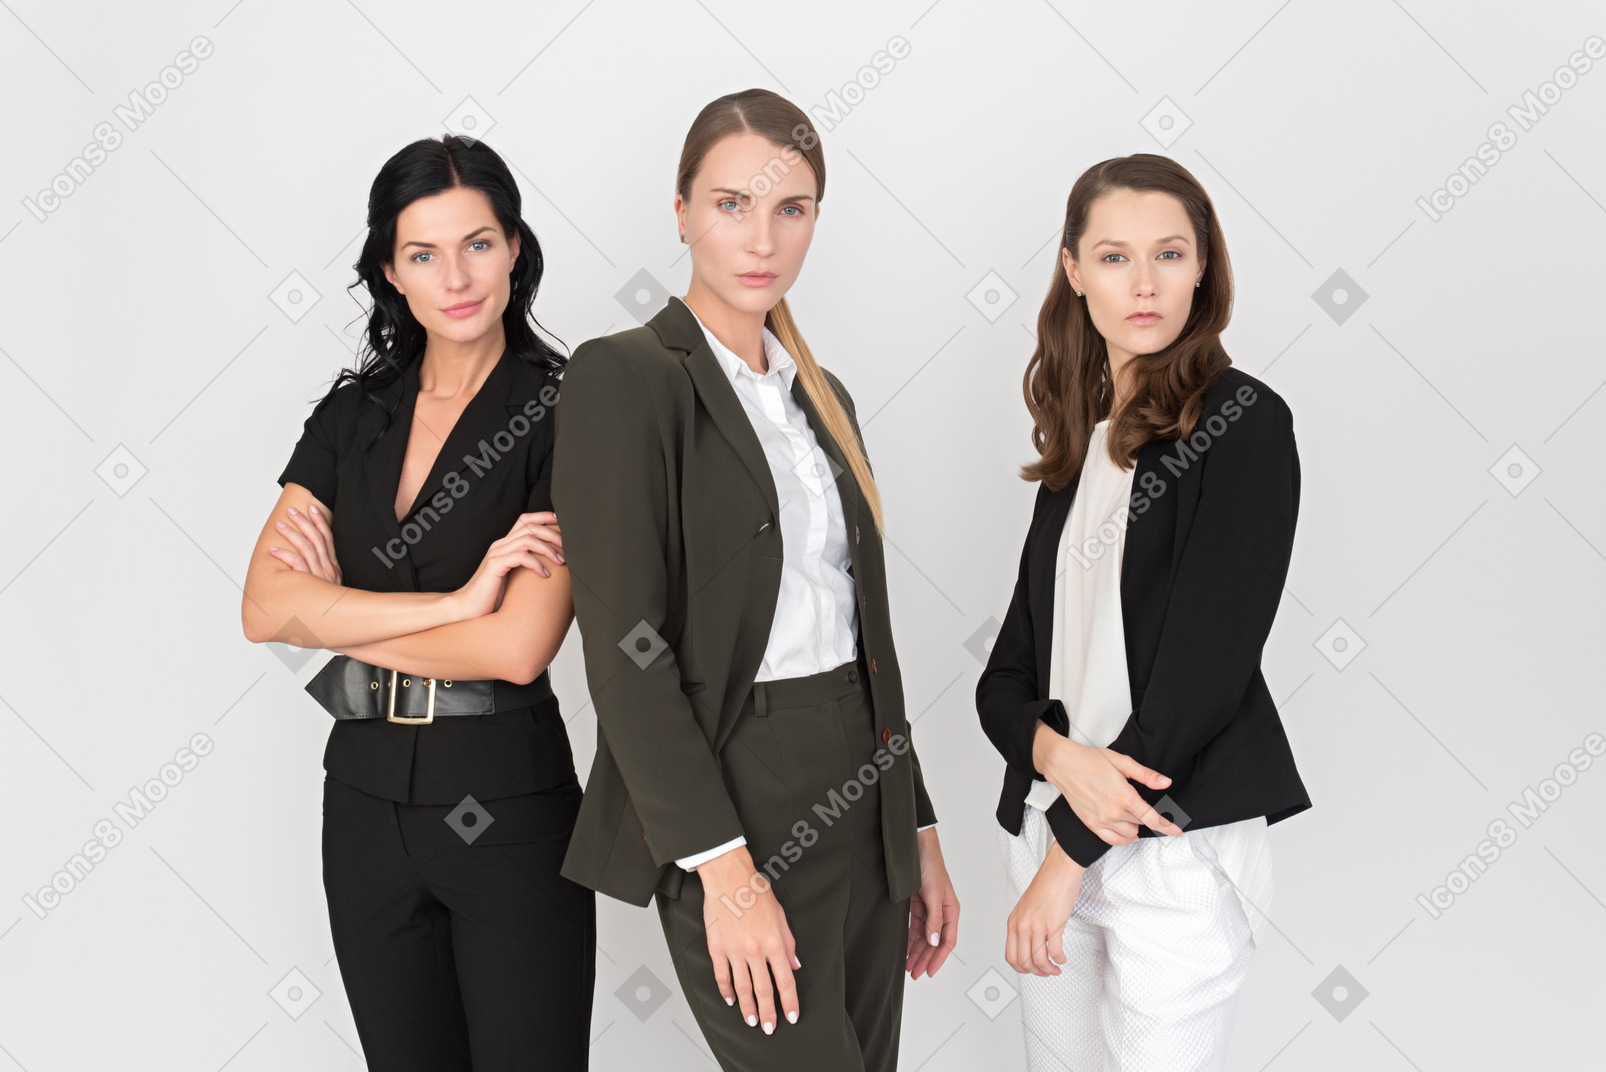 Equipo femenino dispuesto a afrontar todas las luchas laborales.